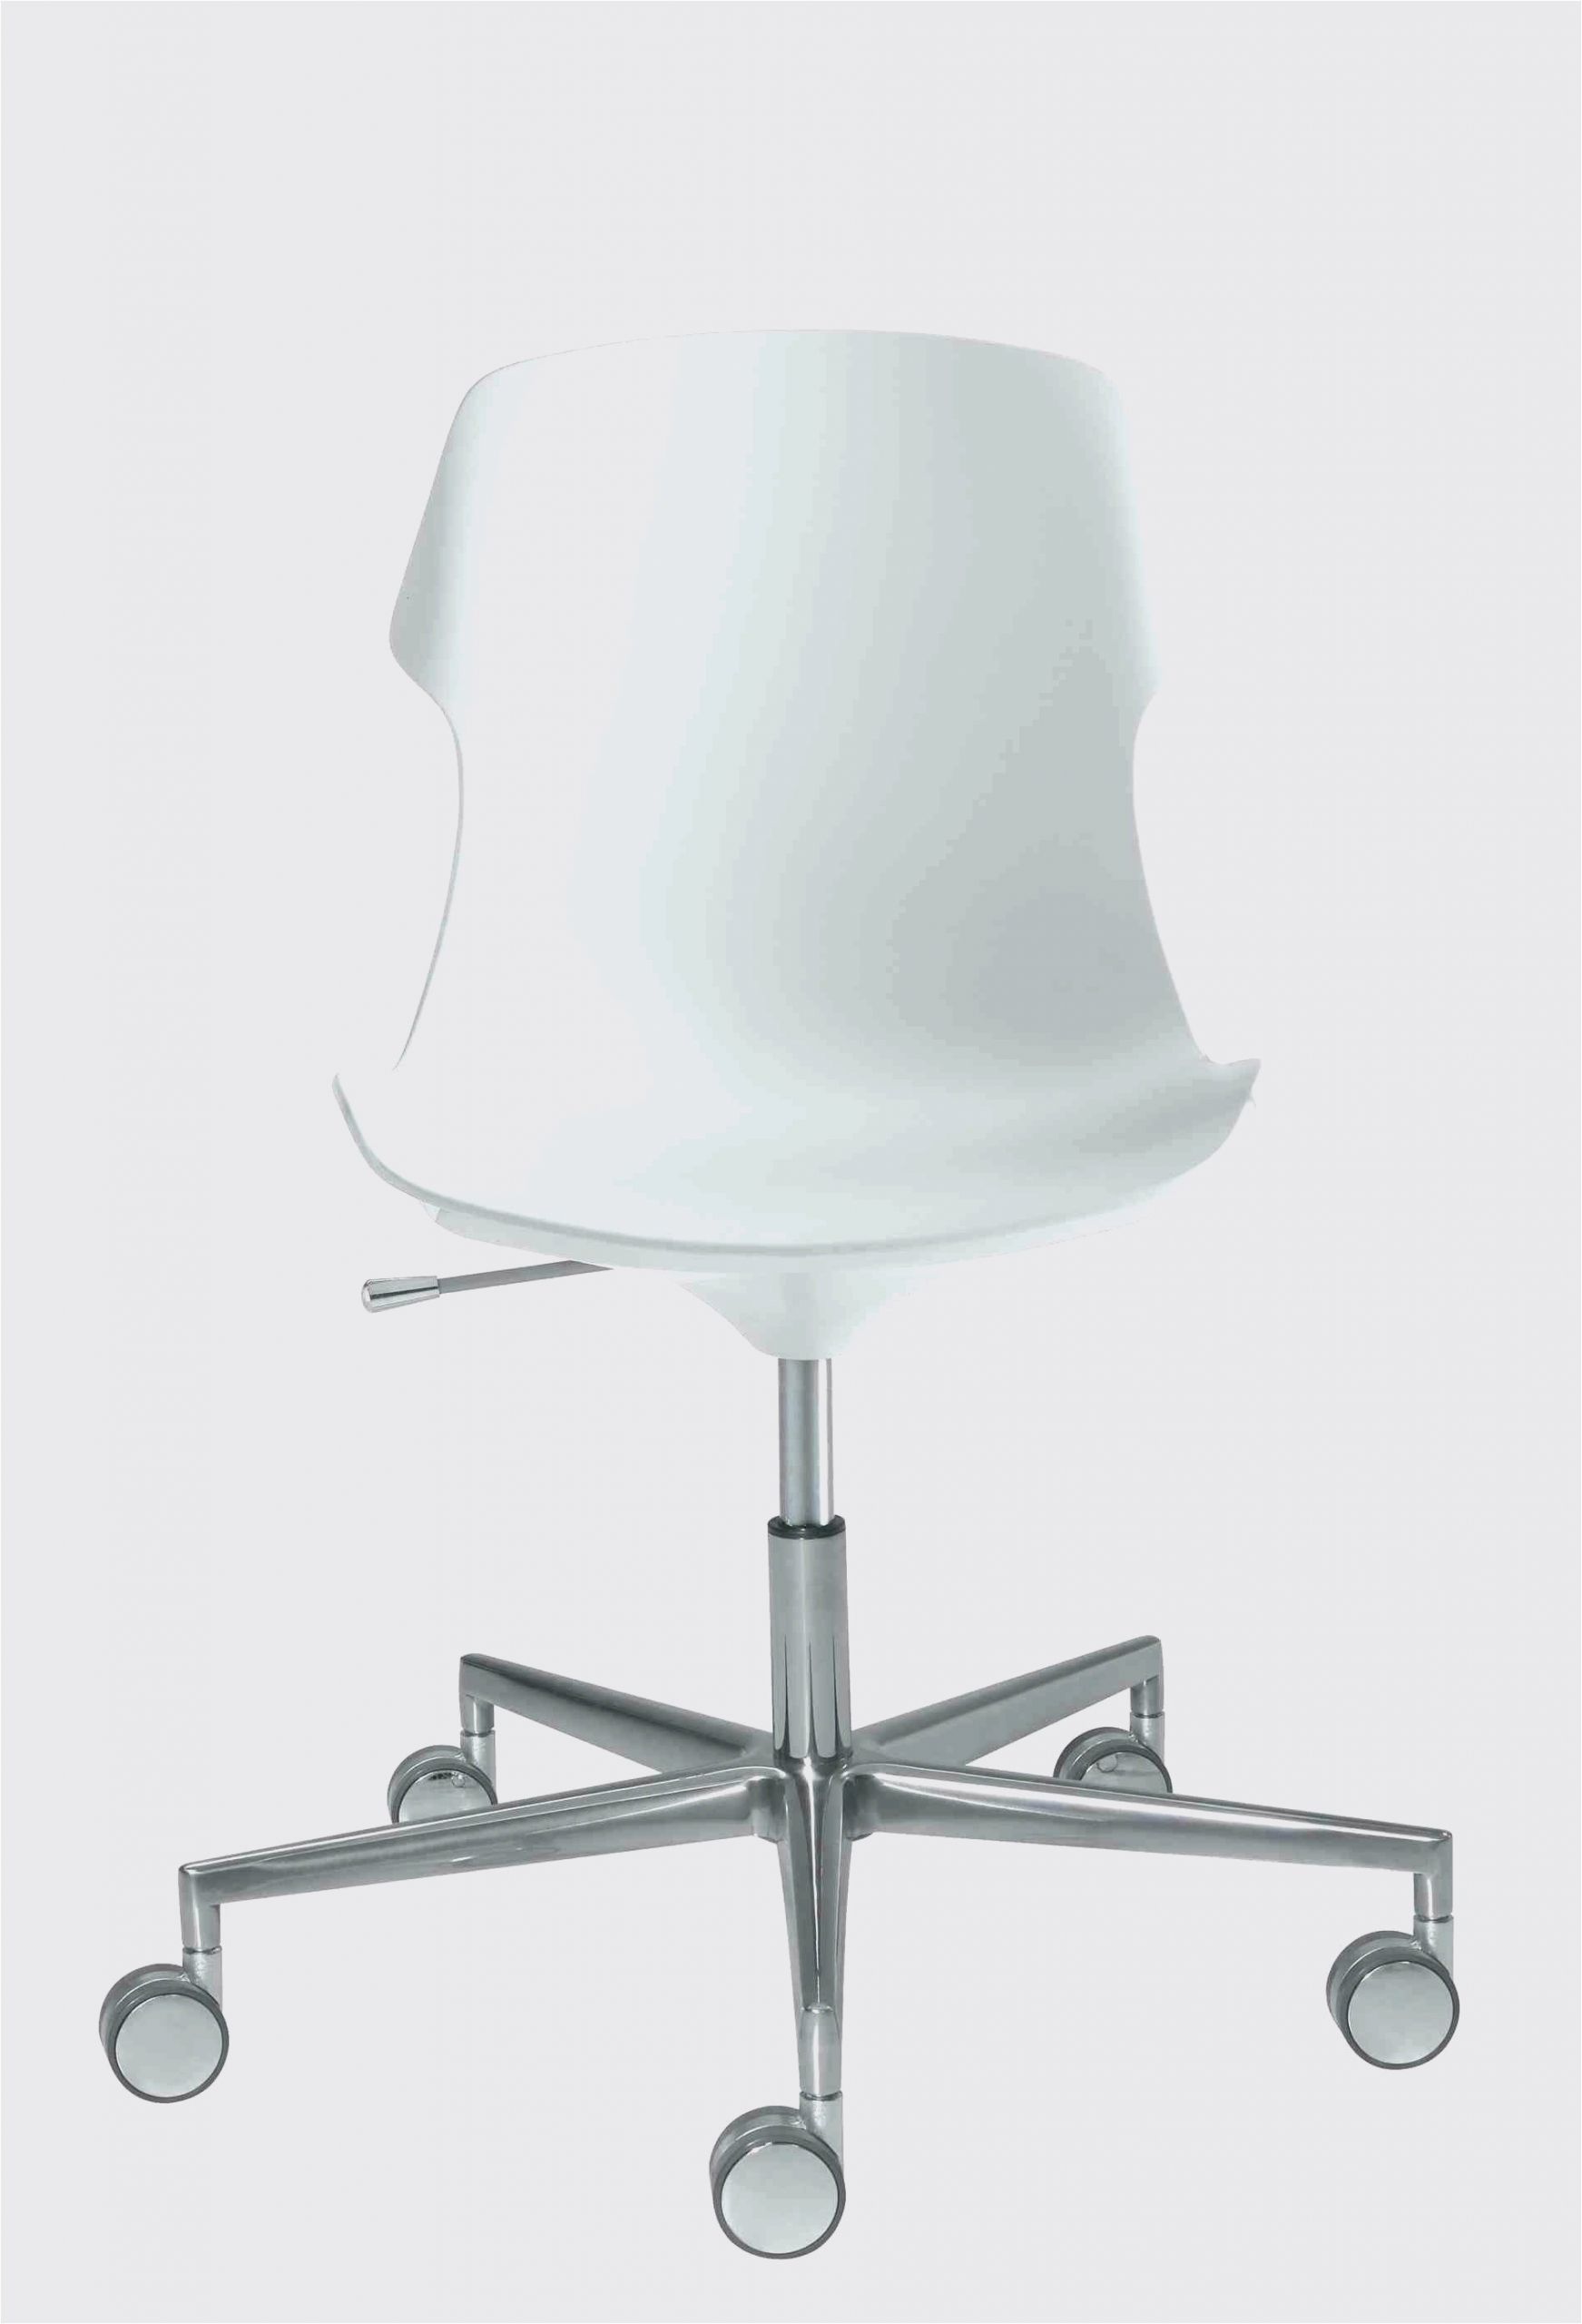 fauteuil fil plastique charmant chaise fil beau chaise de bureau fly chaise bureau scandinave new of fauteuil fil plastique